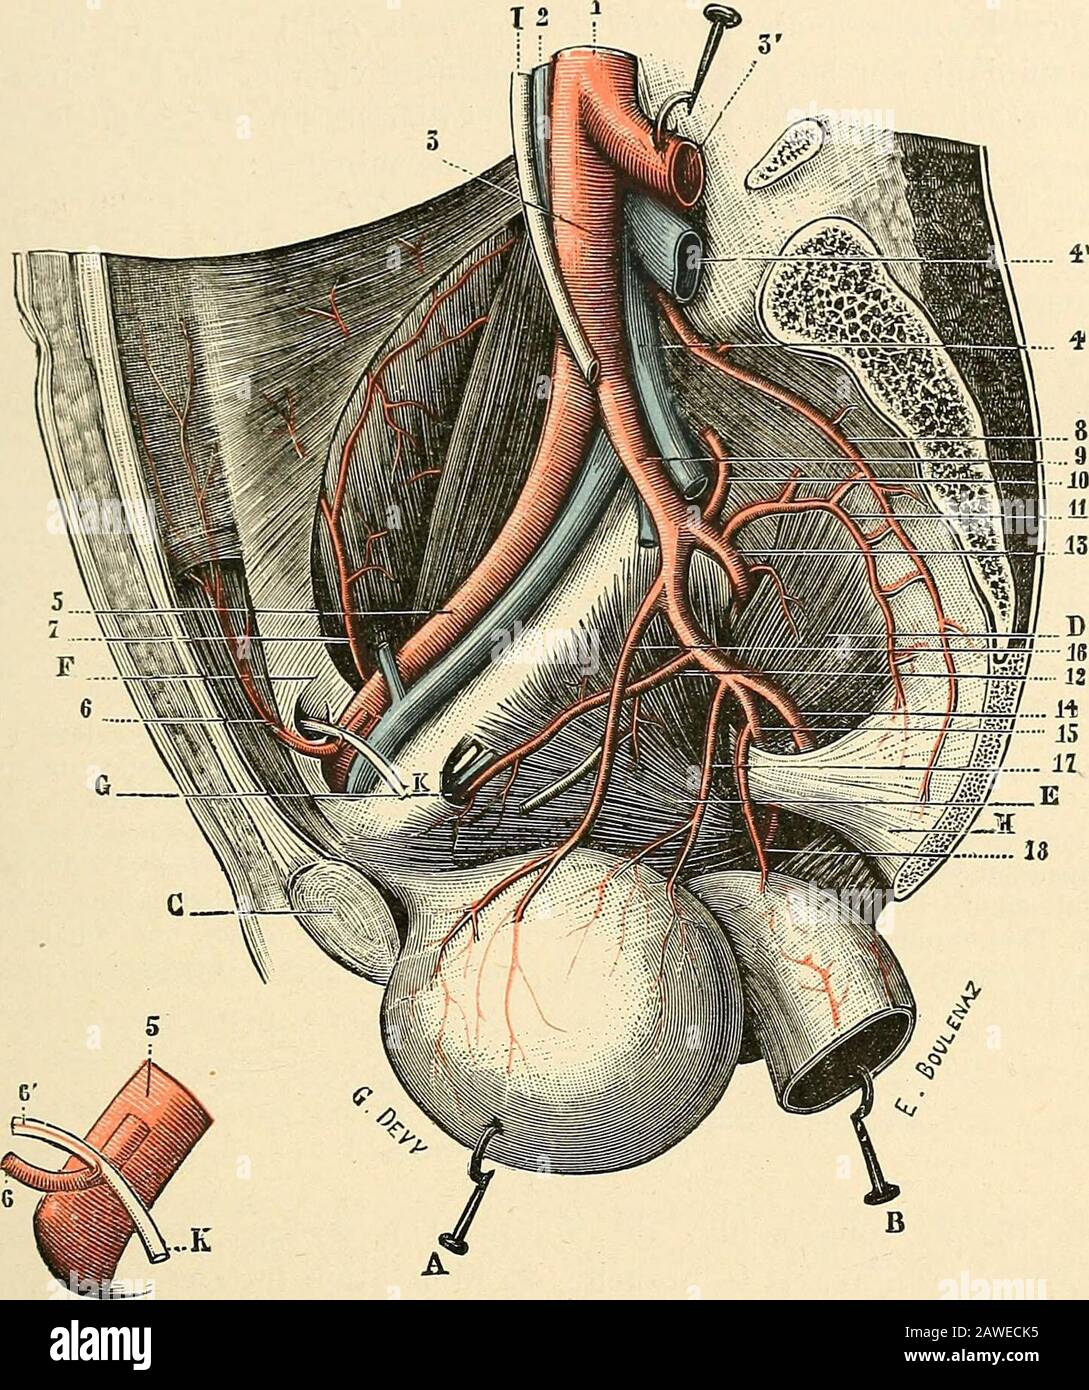 Traité d'anatomie humaine . ; — Du même, Ueber die glonieruli caudales der Sàuge-thiere, ibid., 1867; —Meyeh, Coccygeal gland, Henle u. Pfeufers Zeitschr., 186G; — Sertoli,Ueber die Structur der Steissdriise, CenivdUA. f. nied. Wiss., 1867 ; — Banchs, On tlie coccygealùodi/, Glascow med. Journ., 1867; —Macalister, On the analoviy of the coccygeal gland, Brit.med. Journ., 1868. § IL — Artère iliaque primitive ET SES branches Au nombre de deux, lune droite, lautre gauche, les artères iliaques primitives(fig. 143,10 et 151,3) sétendent obliquement du bord inférieur de la quatrième ver- ARTERE ILI Stock Photo